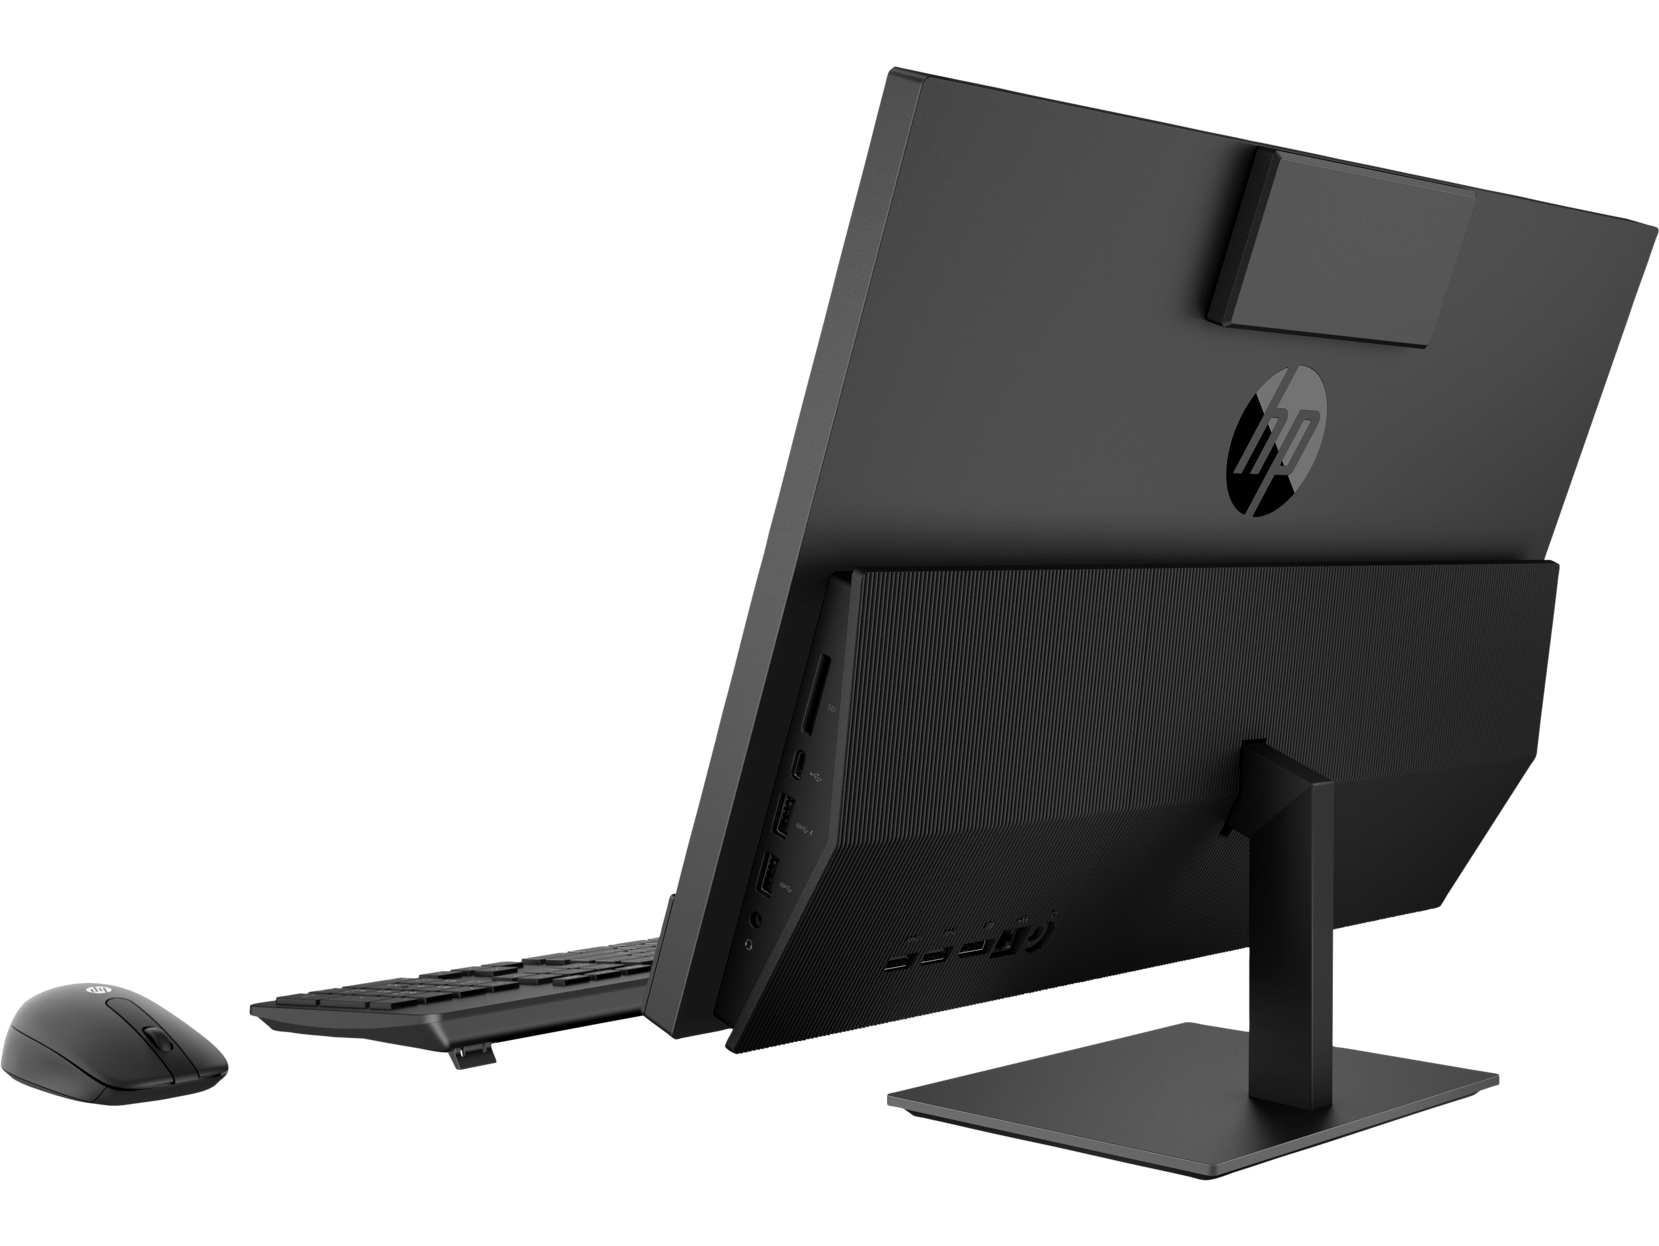 Моноблок для бизнеса HP ProOne 600 G4 All-in-One с сенсорным экраном